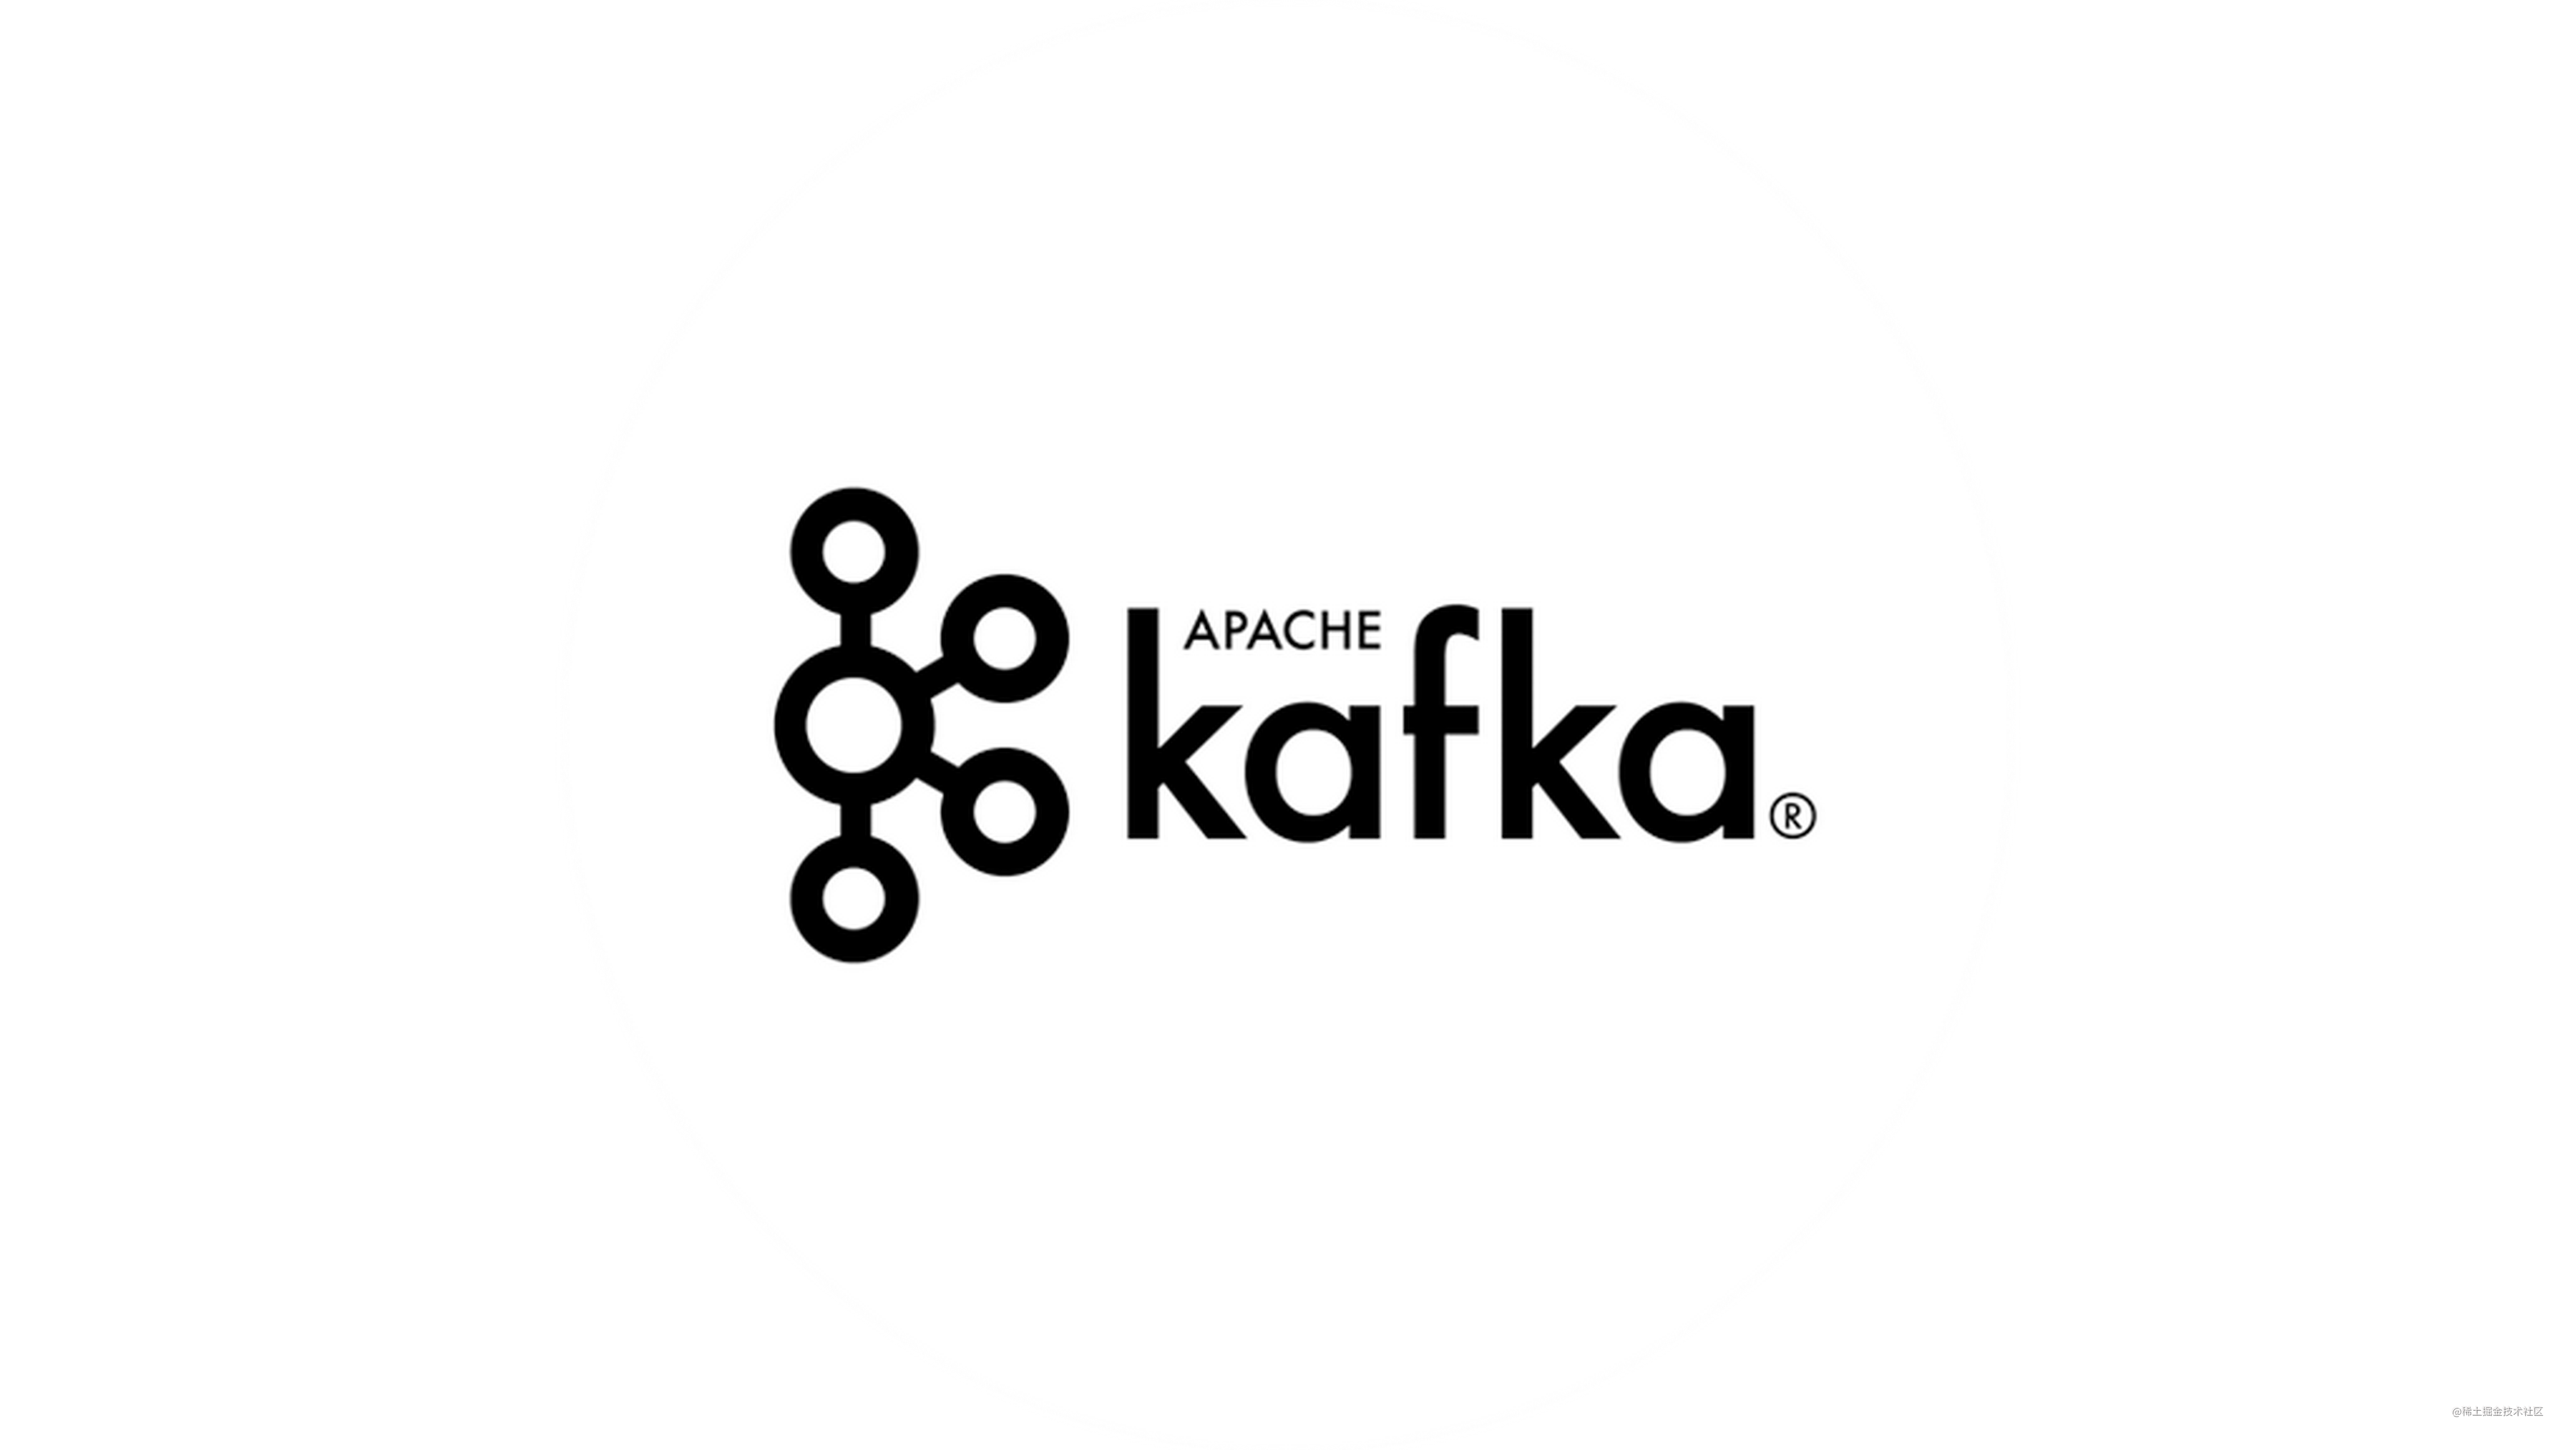 kafka-topics-sh